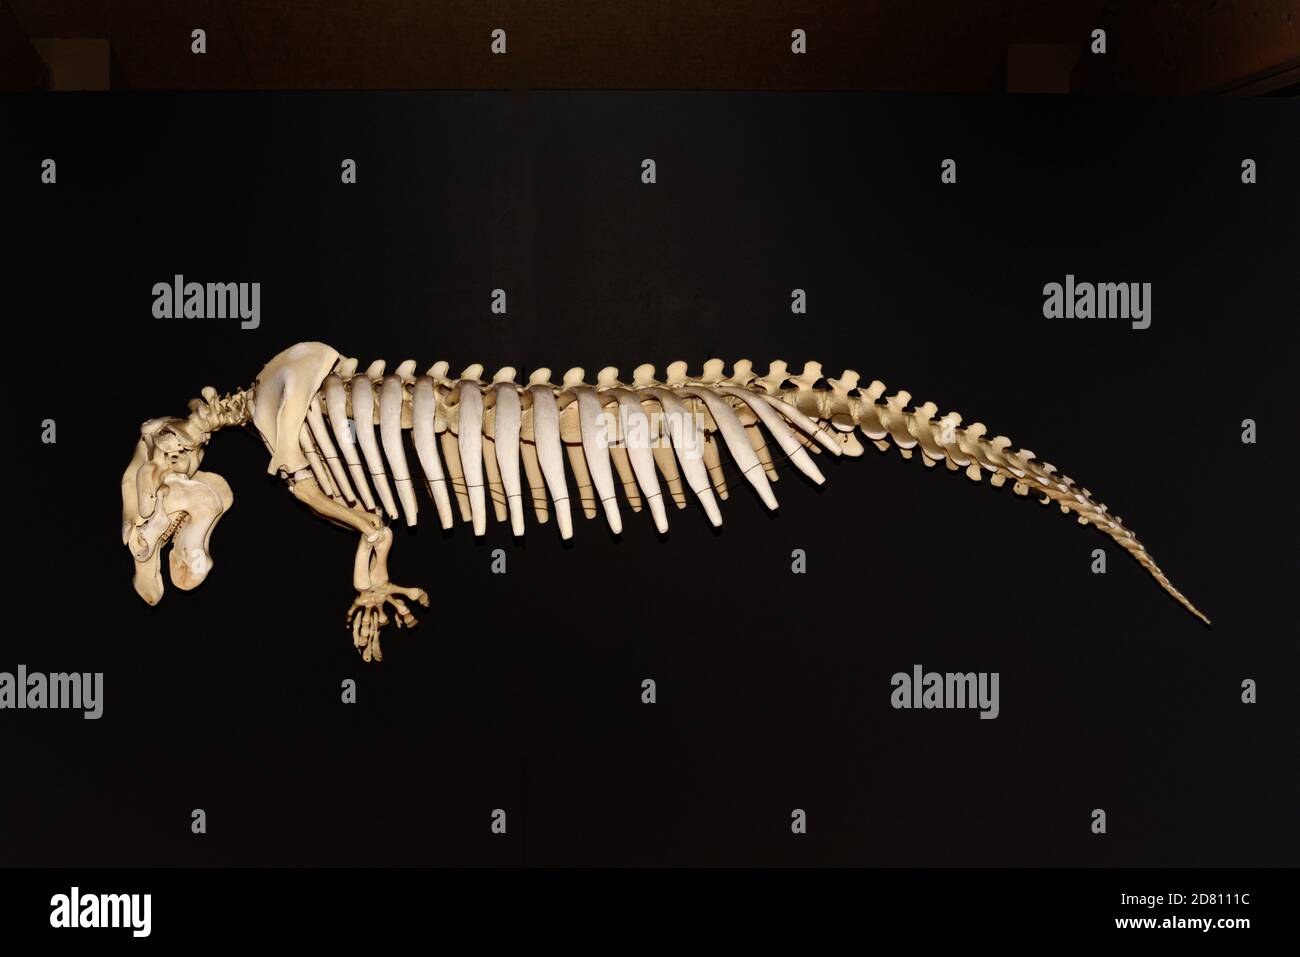 Skelett der nordamerikanischen Manatee aka West Indian Manatee oder Florida Manatee, Trichechus manatus latirostris, in Castellane Museum Provence Frankreich Stockfoto